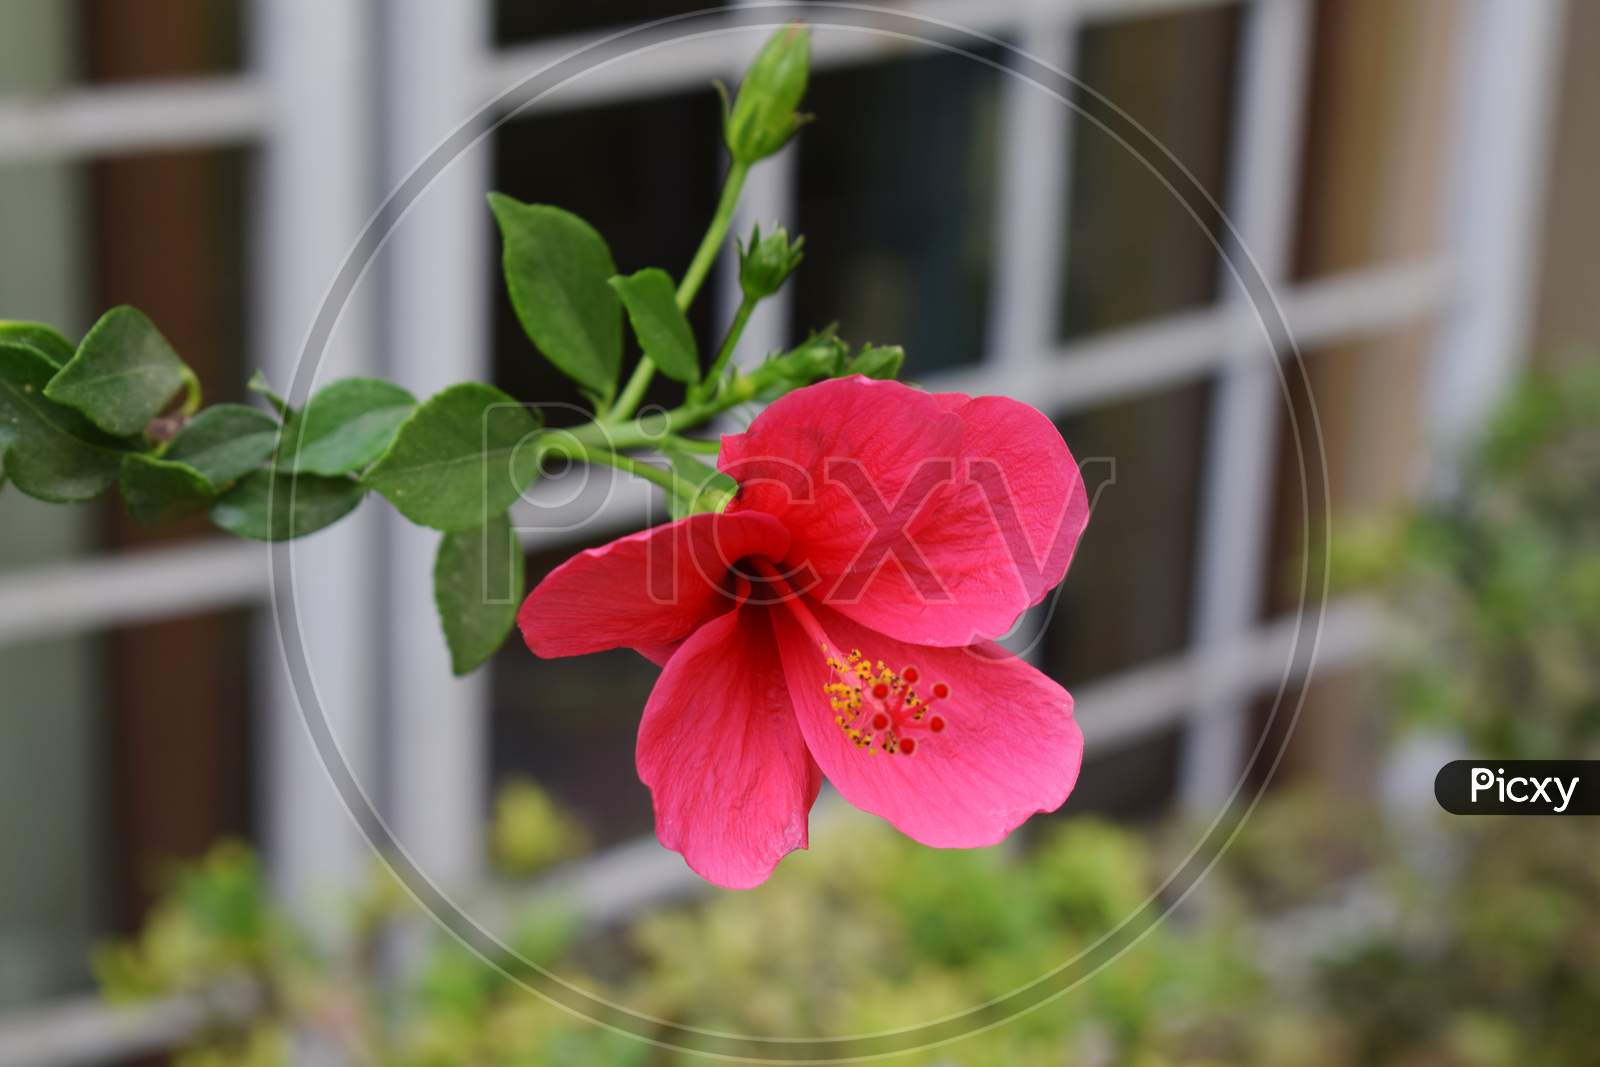 Red Hibiscus Rosa Sinensis, Indian Hibiscus Plant